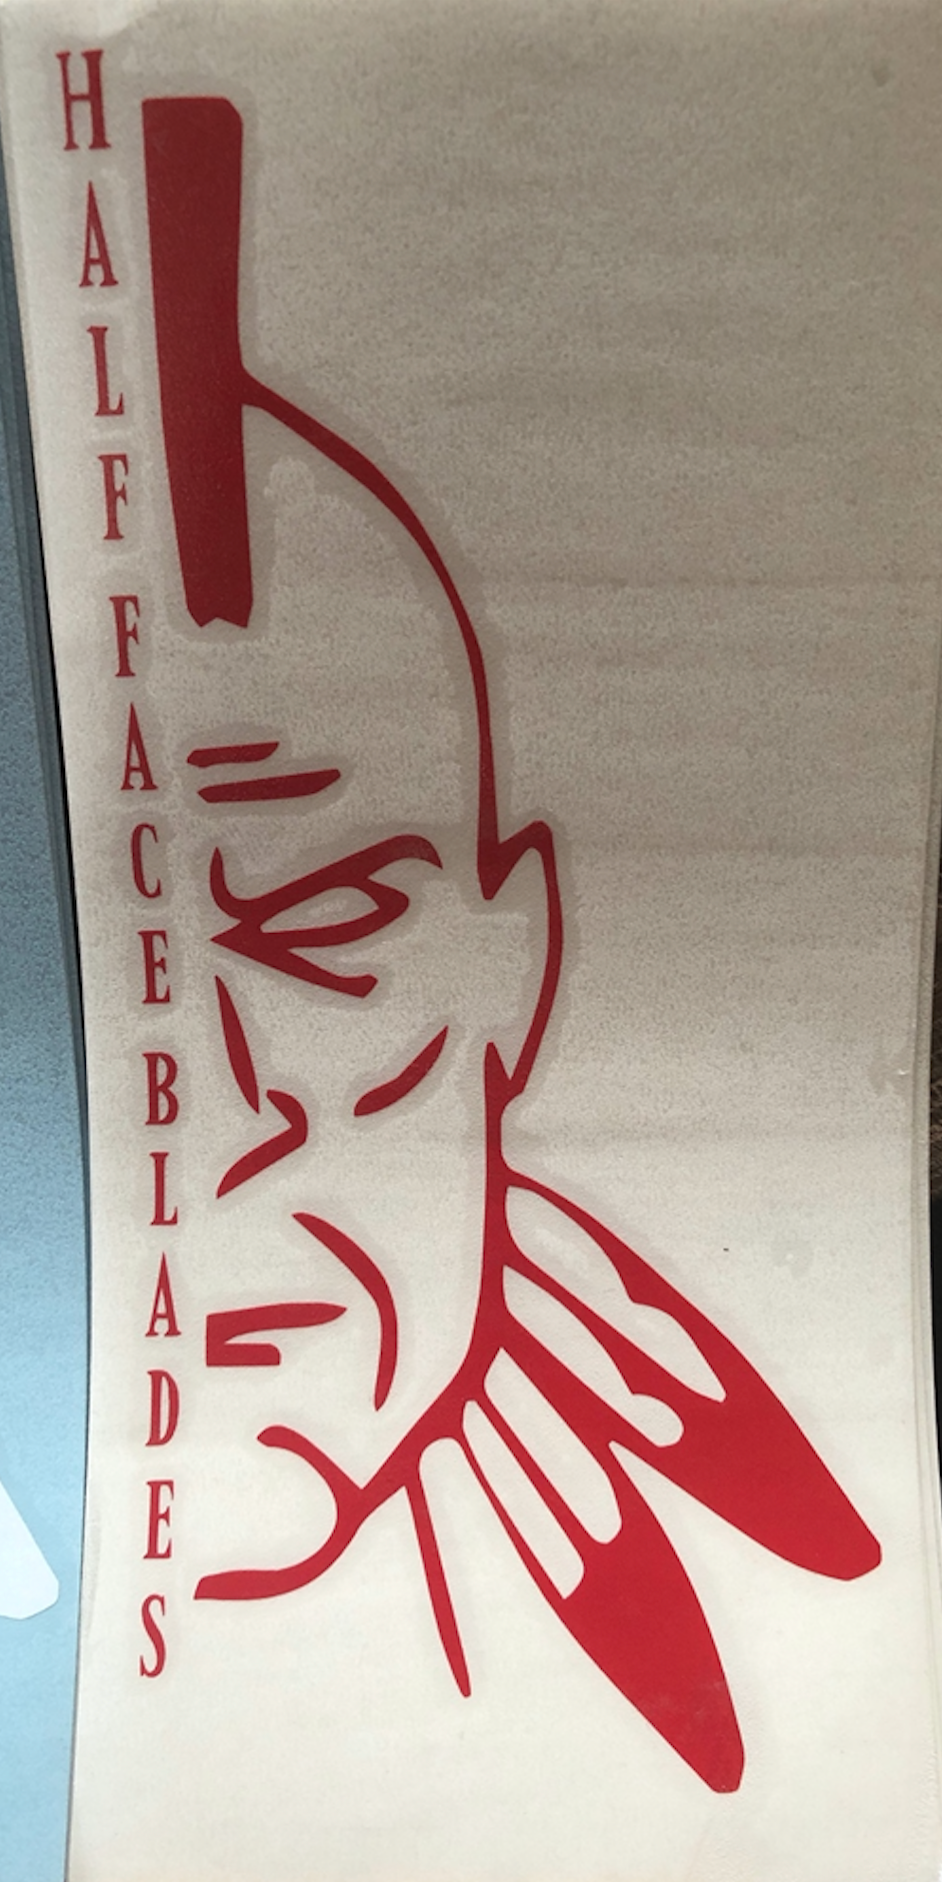 DECALS, Half Face Blades logo